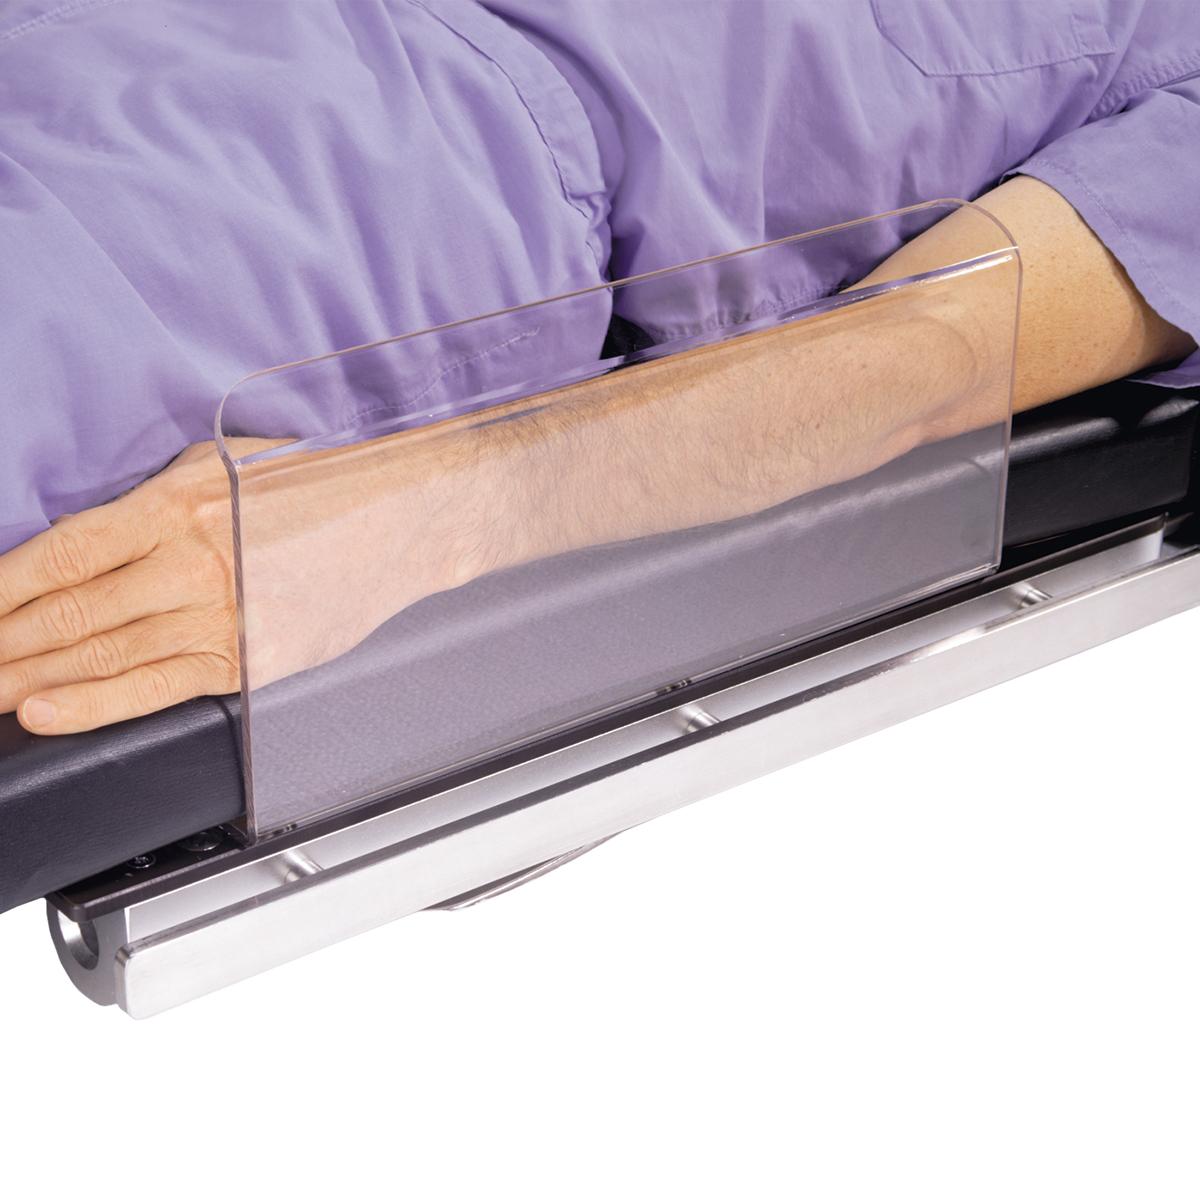 Dispositif de protection de bras, en cours d'utilisation par un patient